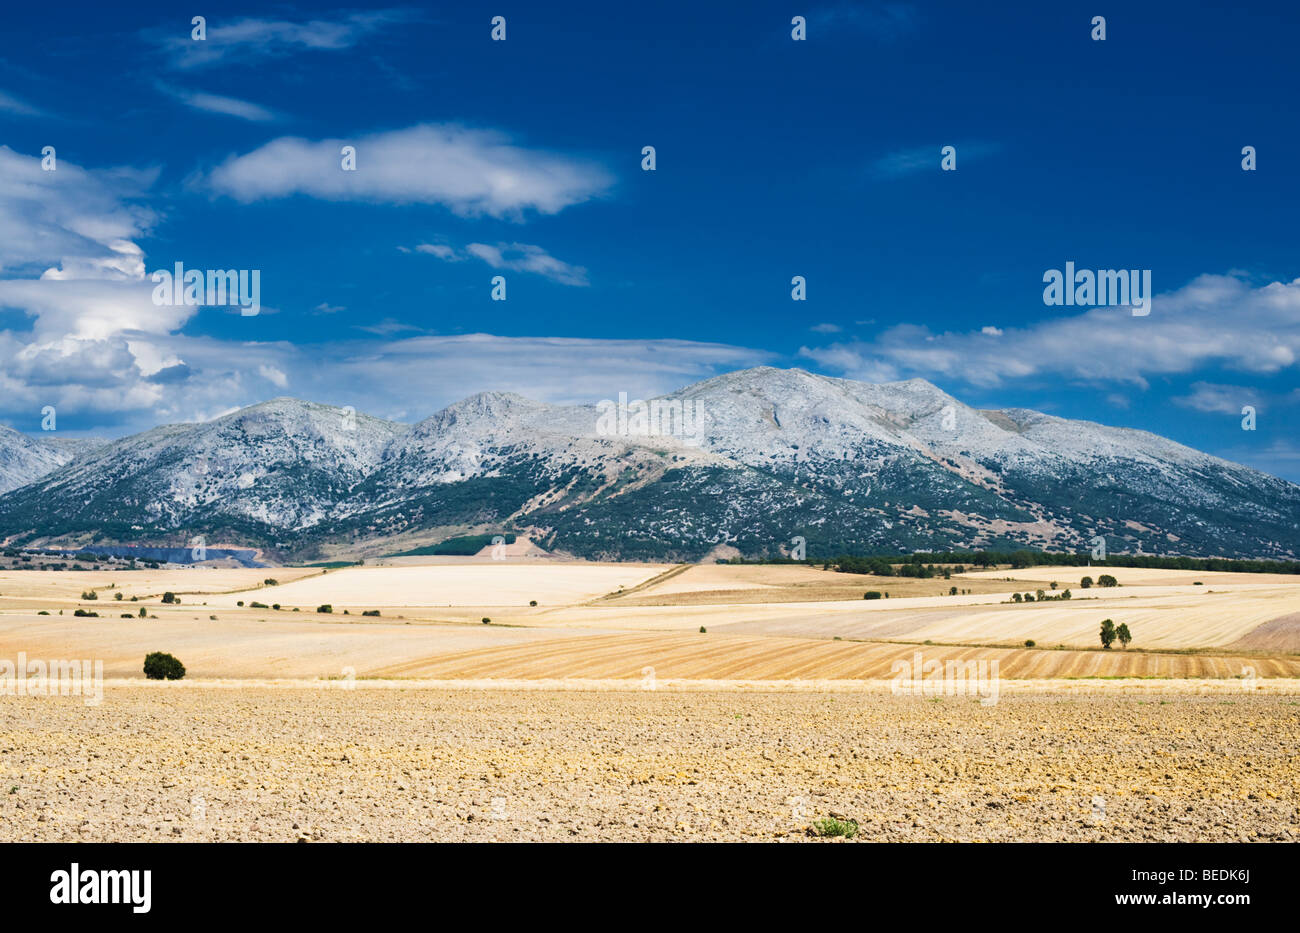 The Spanish Meseta overlooking the Cantabrian Mountains, near Cervera de Pisuerga, Palencia Province, Castilla y León, Spain Stock Photo